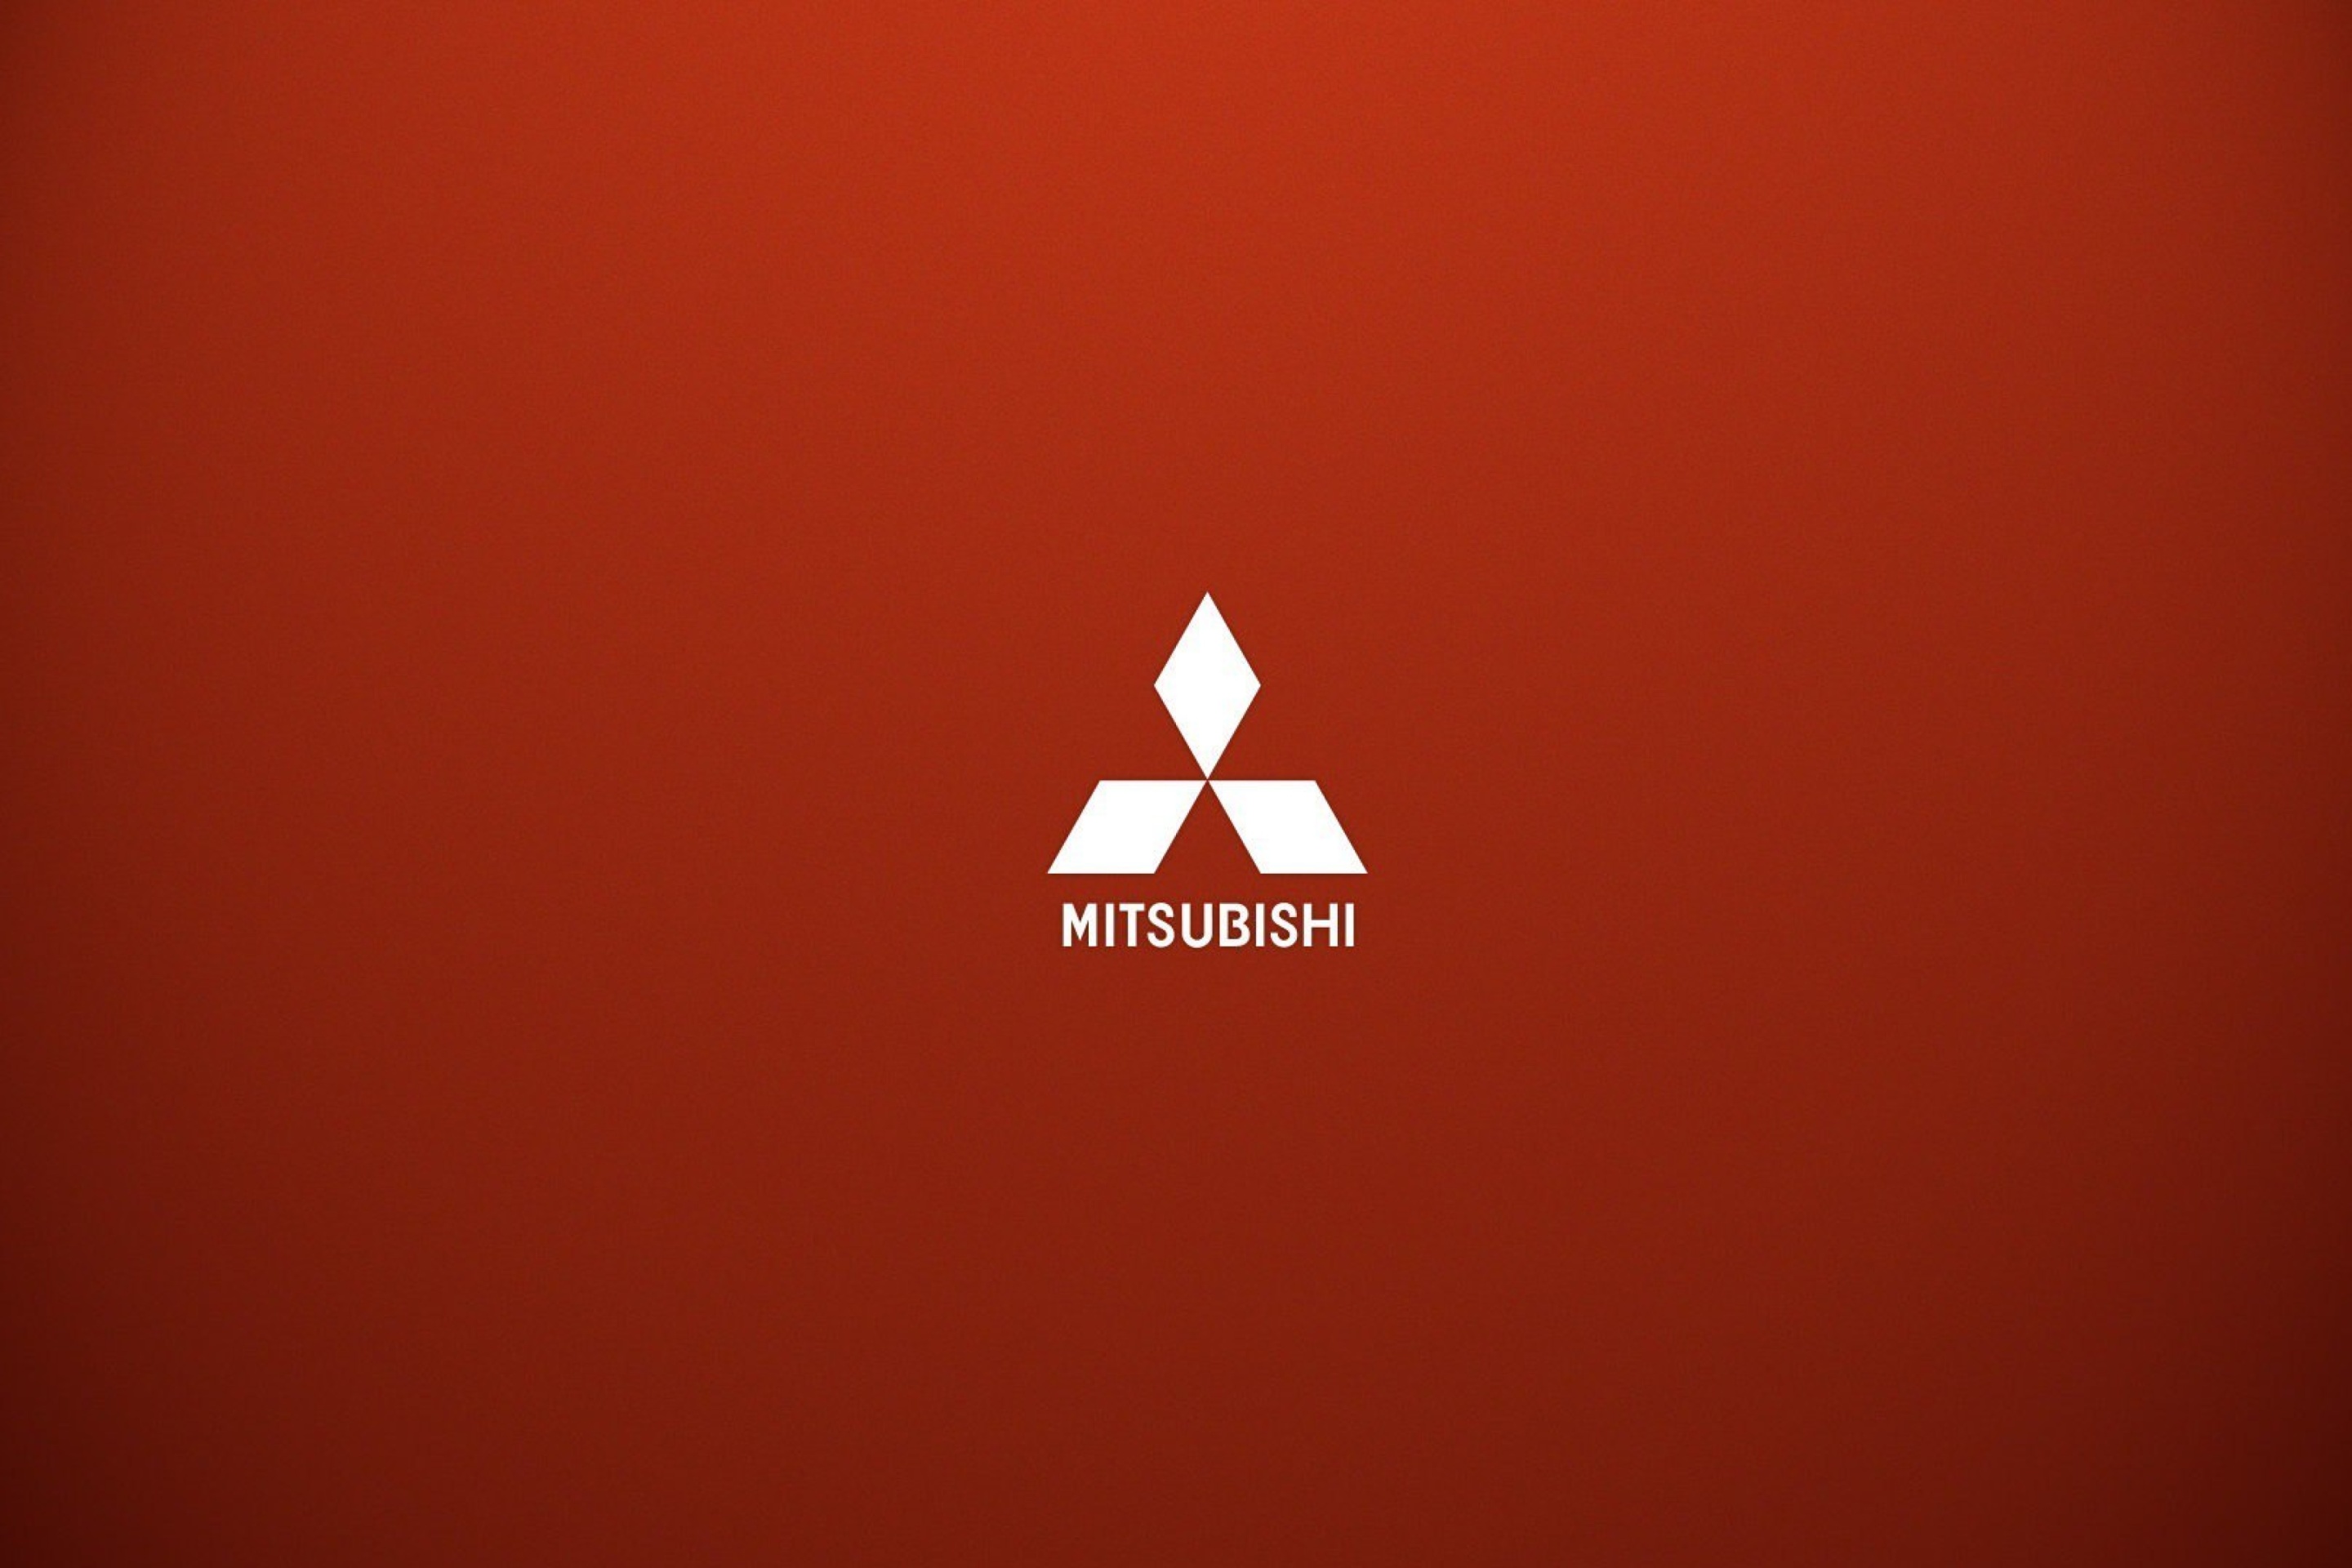 Sfondi Mitsubishi logo 2880x1920